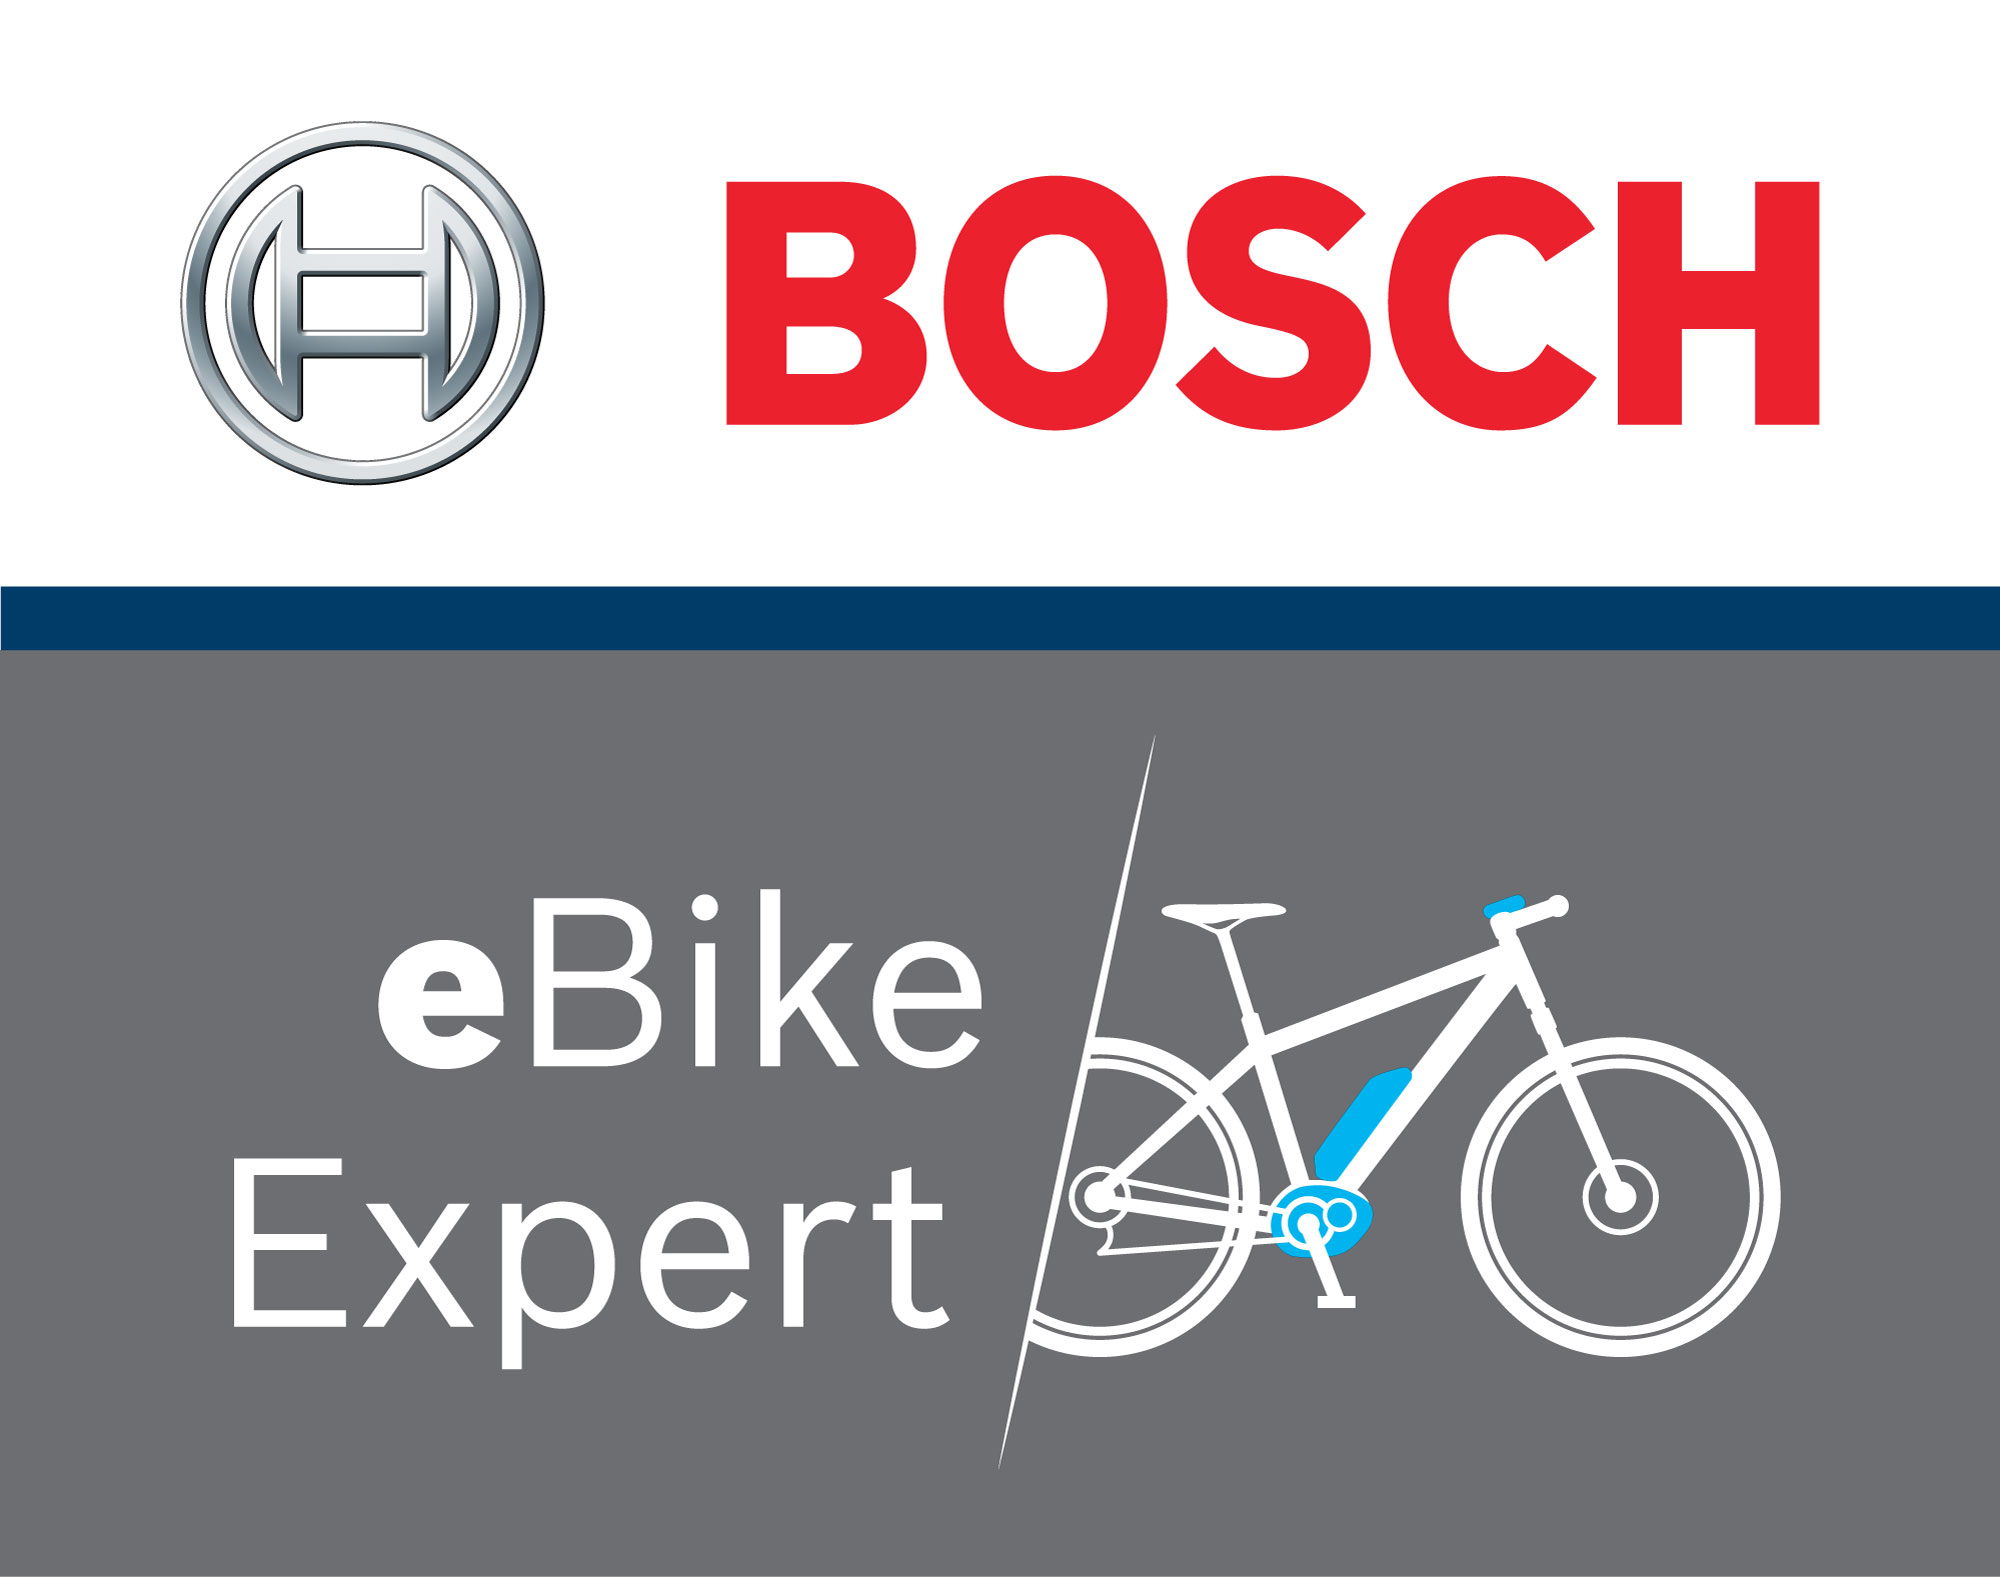  magasin de vélo à Epinal Bosch eBike Expert